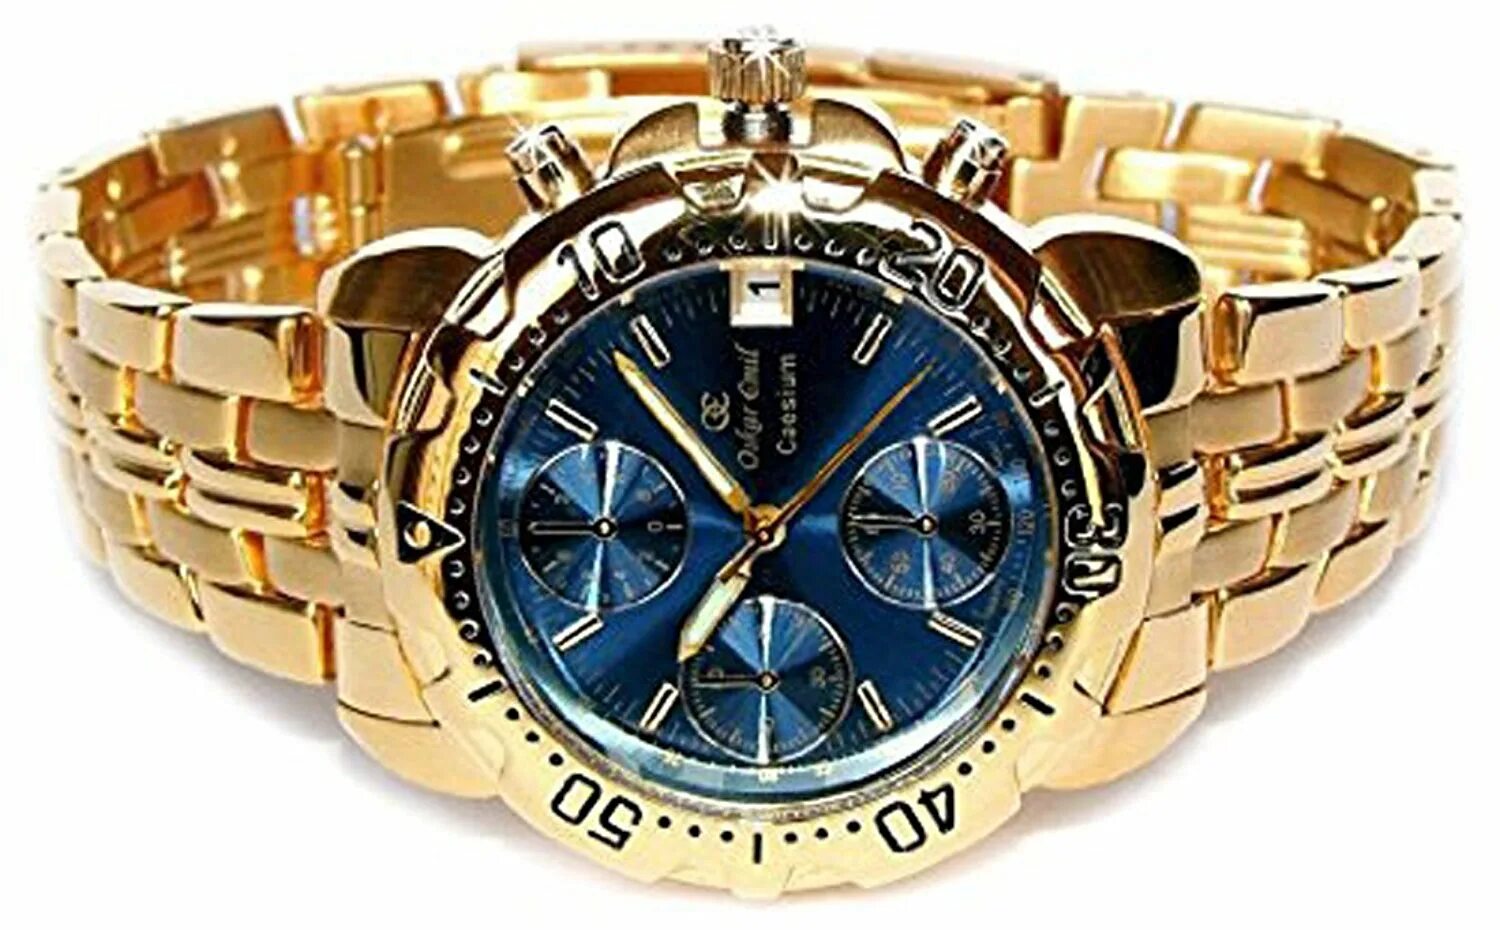 Часы Oskar Emil. Позолоченные мужские часы Oskar Emil. Oskar Emil часы наручные мужские. Часы фирмы Oskar Emil модель Rodez Gold.